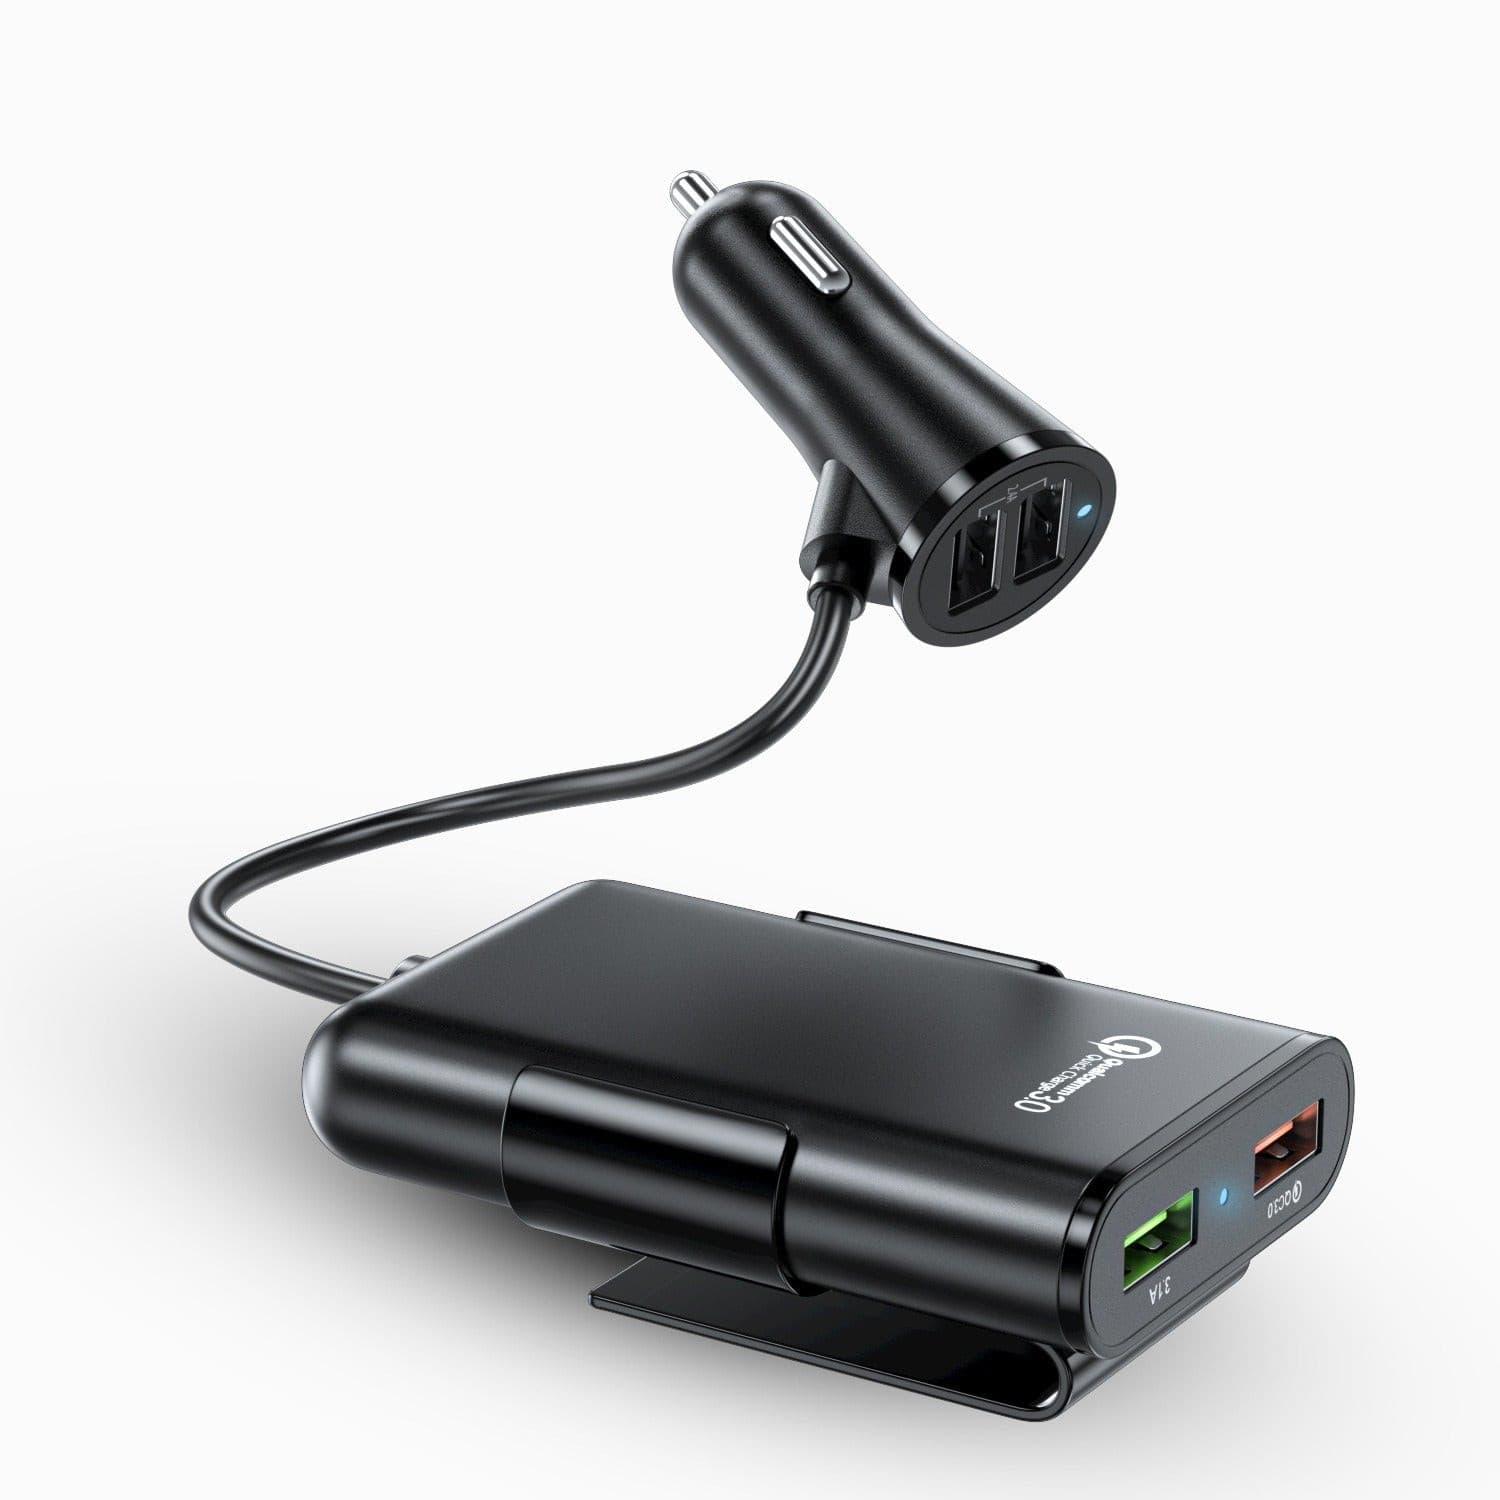 Chargeur rapide 4 ports USB pour voiture - DealValley